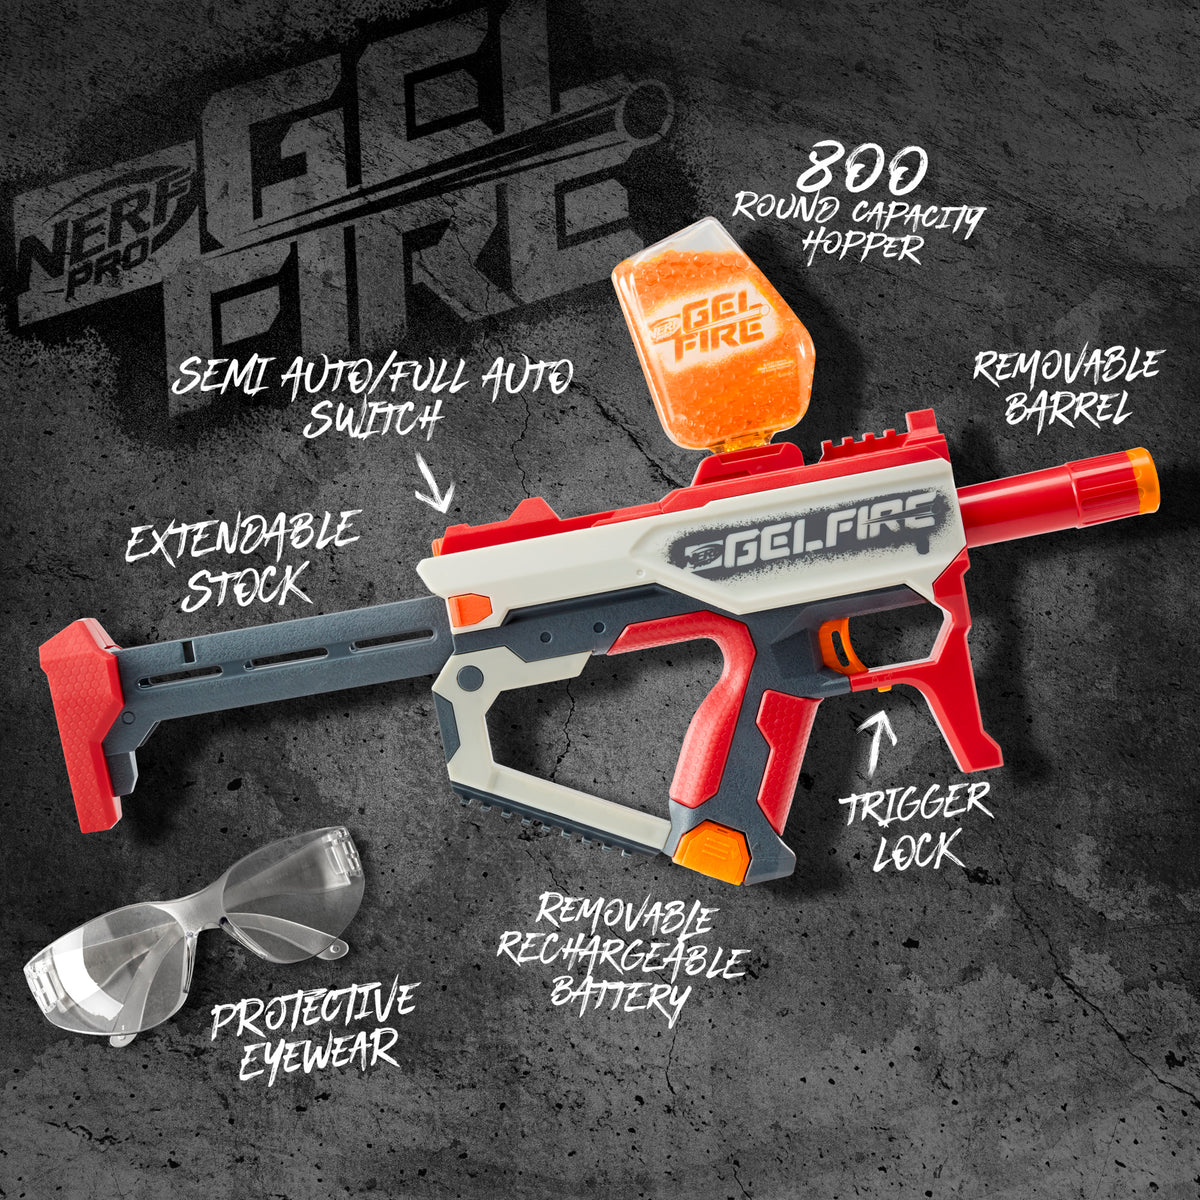 World's First Ever Nerf Gun, NerfGunAttachments